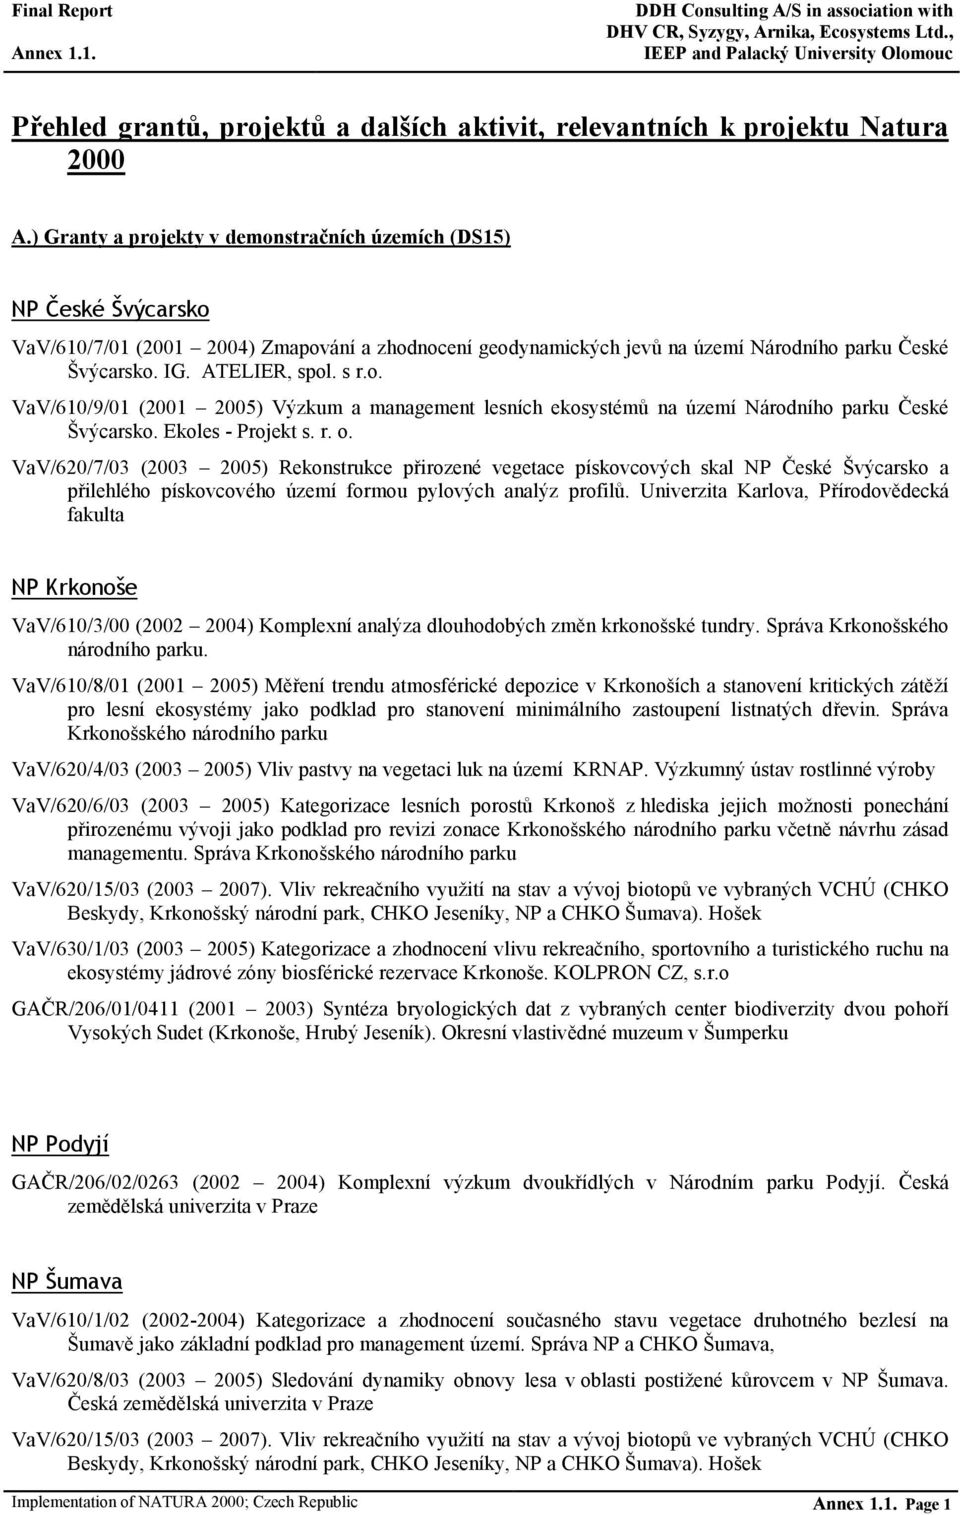 s r.o. VaV/610/9/01 (2001 2005) Výzkum a management lesních ekosystémů na území Národního parku České Švýcarsko. Ekoles - Projekt s. r. o.